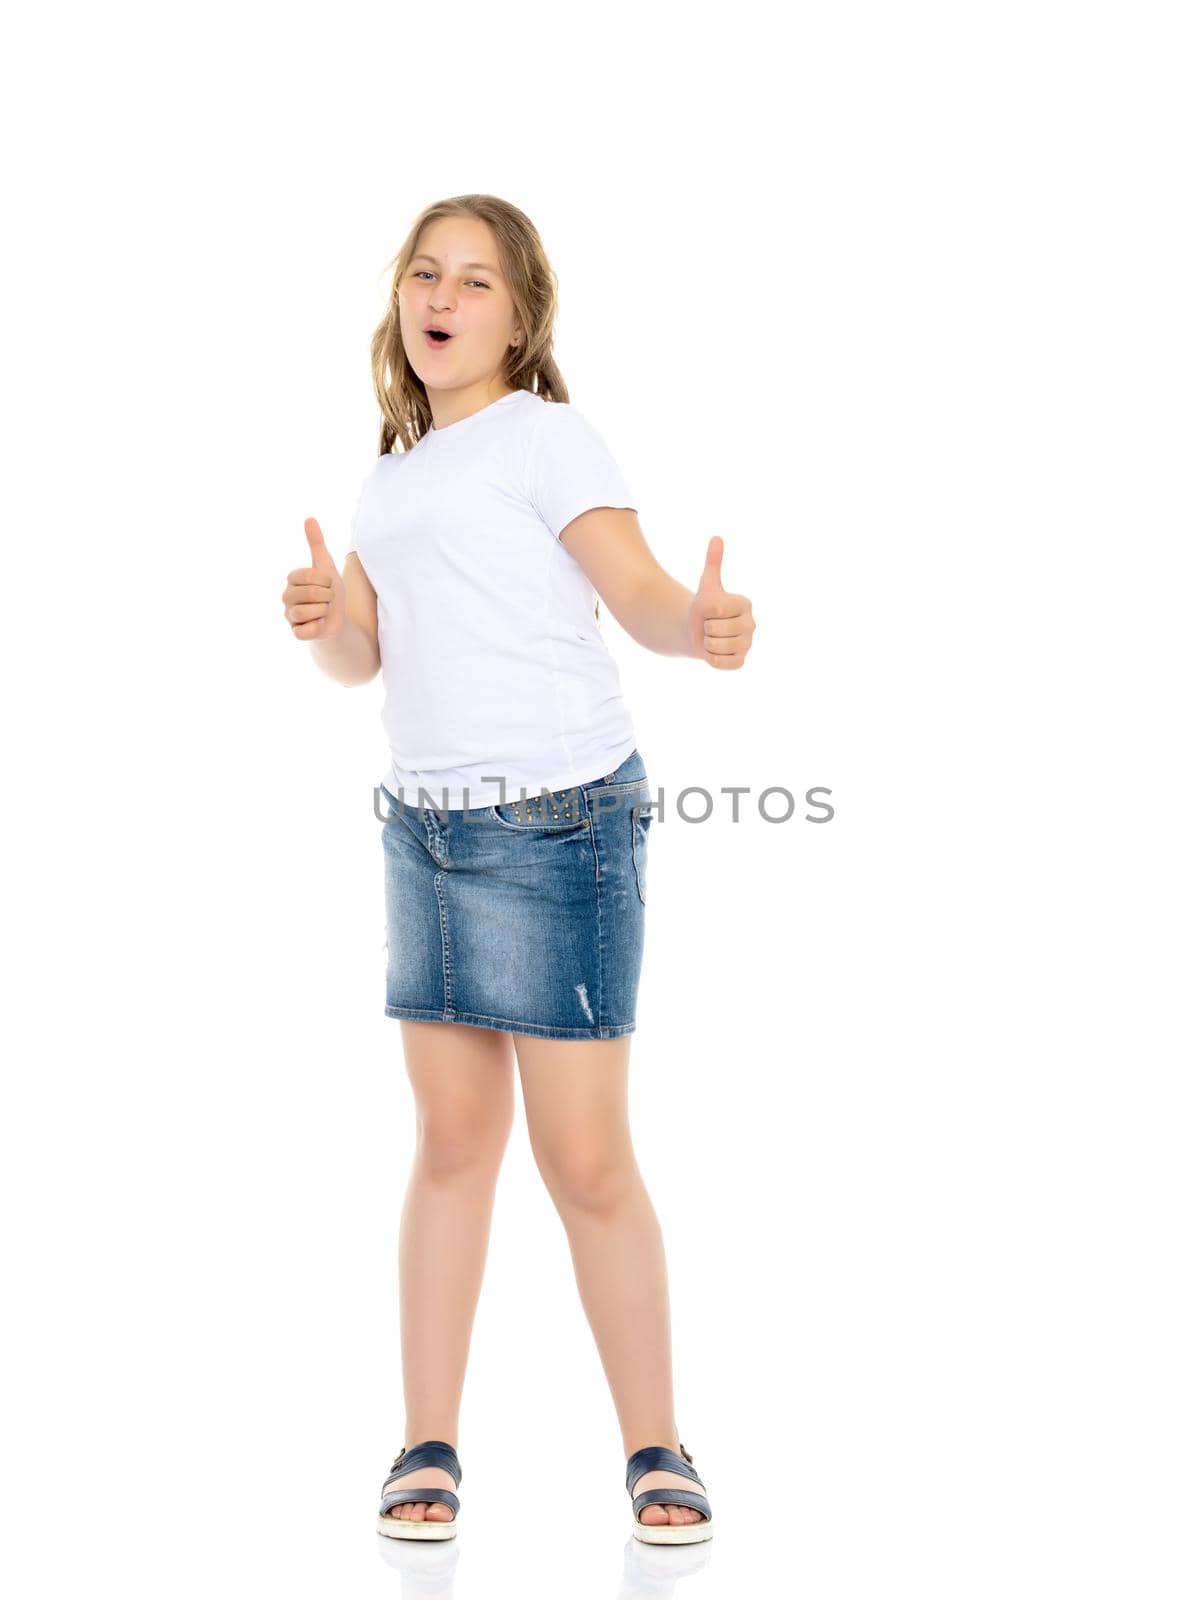 Little school girl pointing to her empty white t-shirt. by kolesnikov_studio